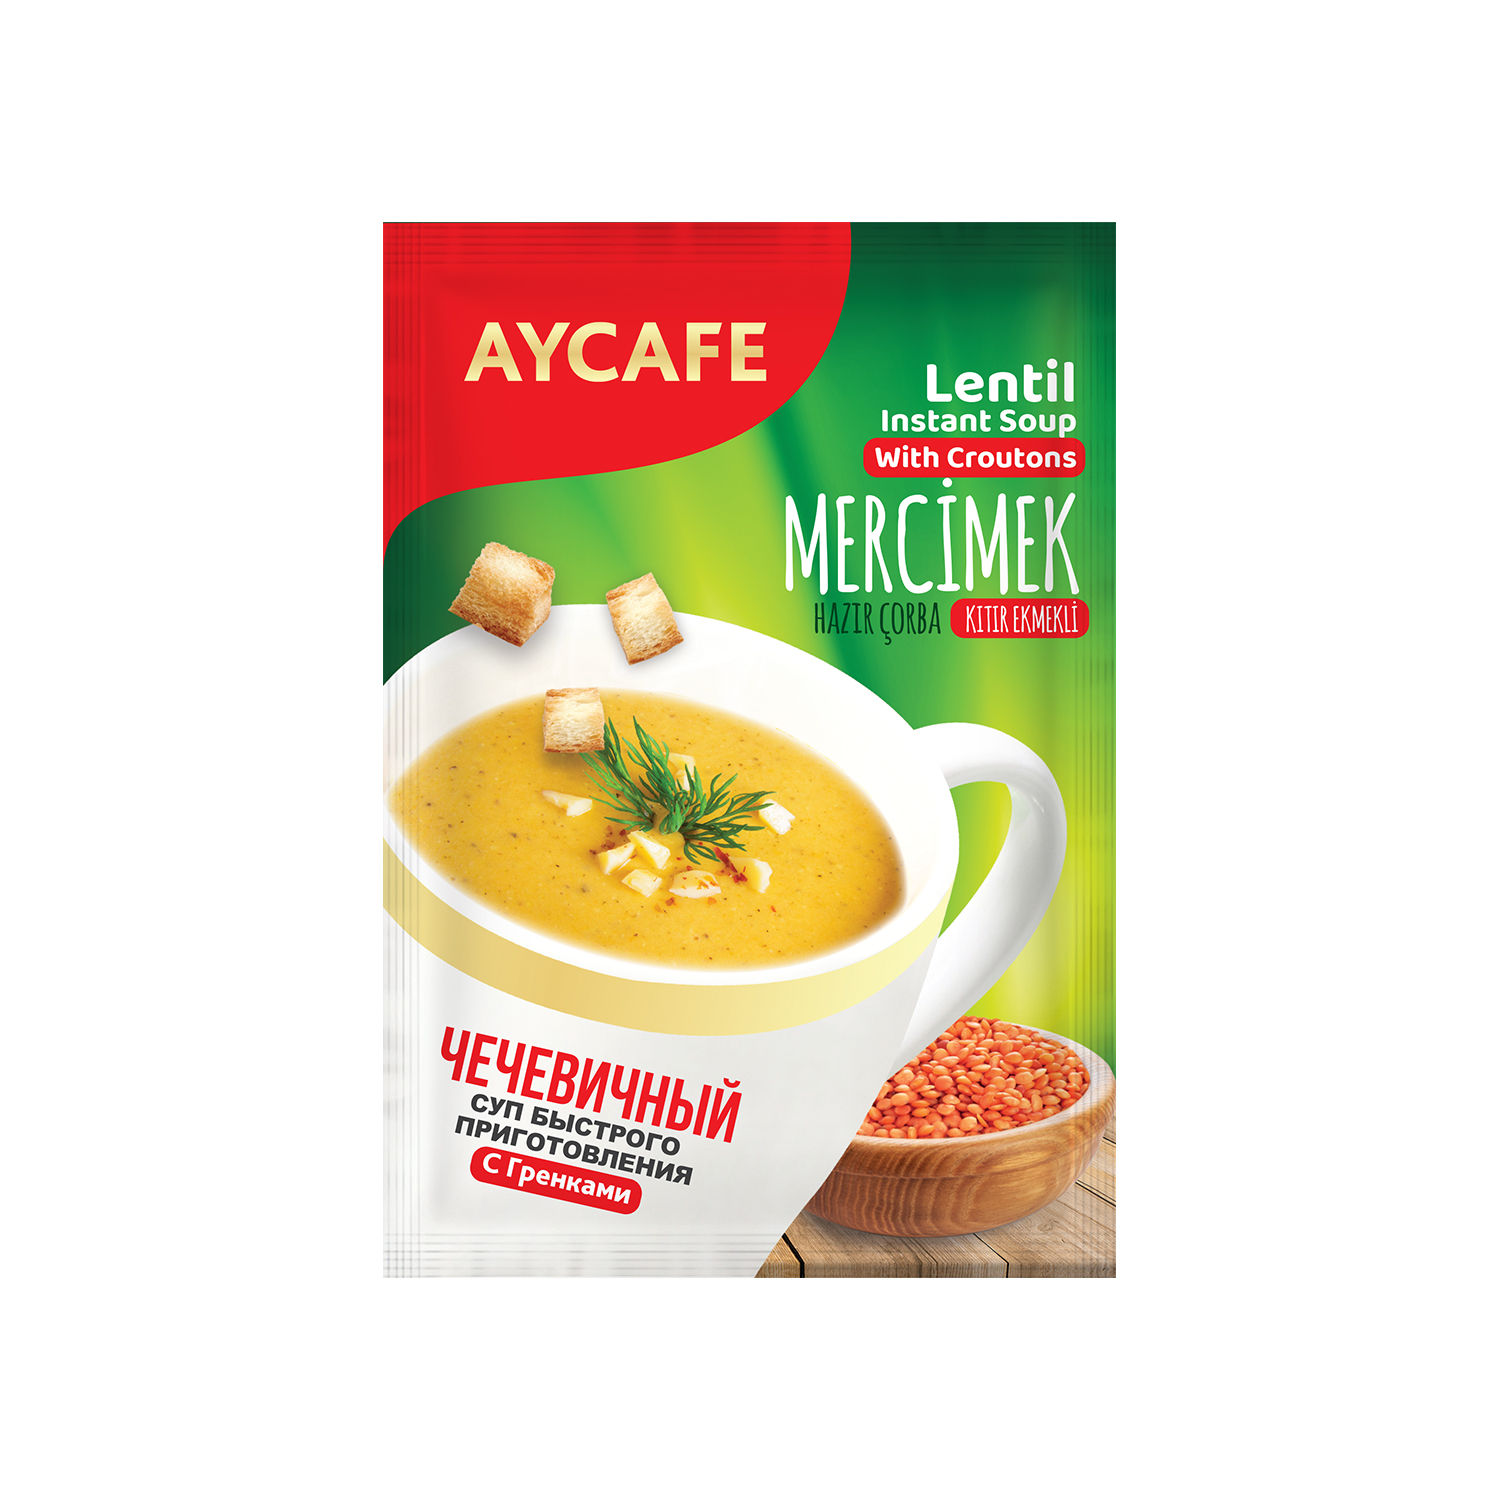 Aycafe Lentil Instant Soup In Sachets